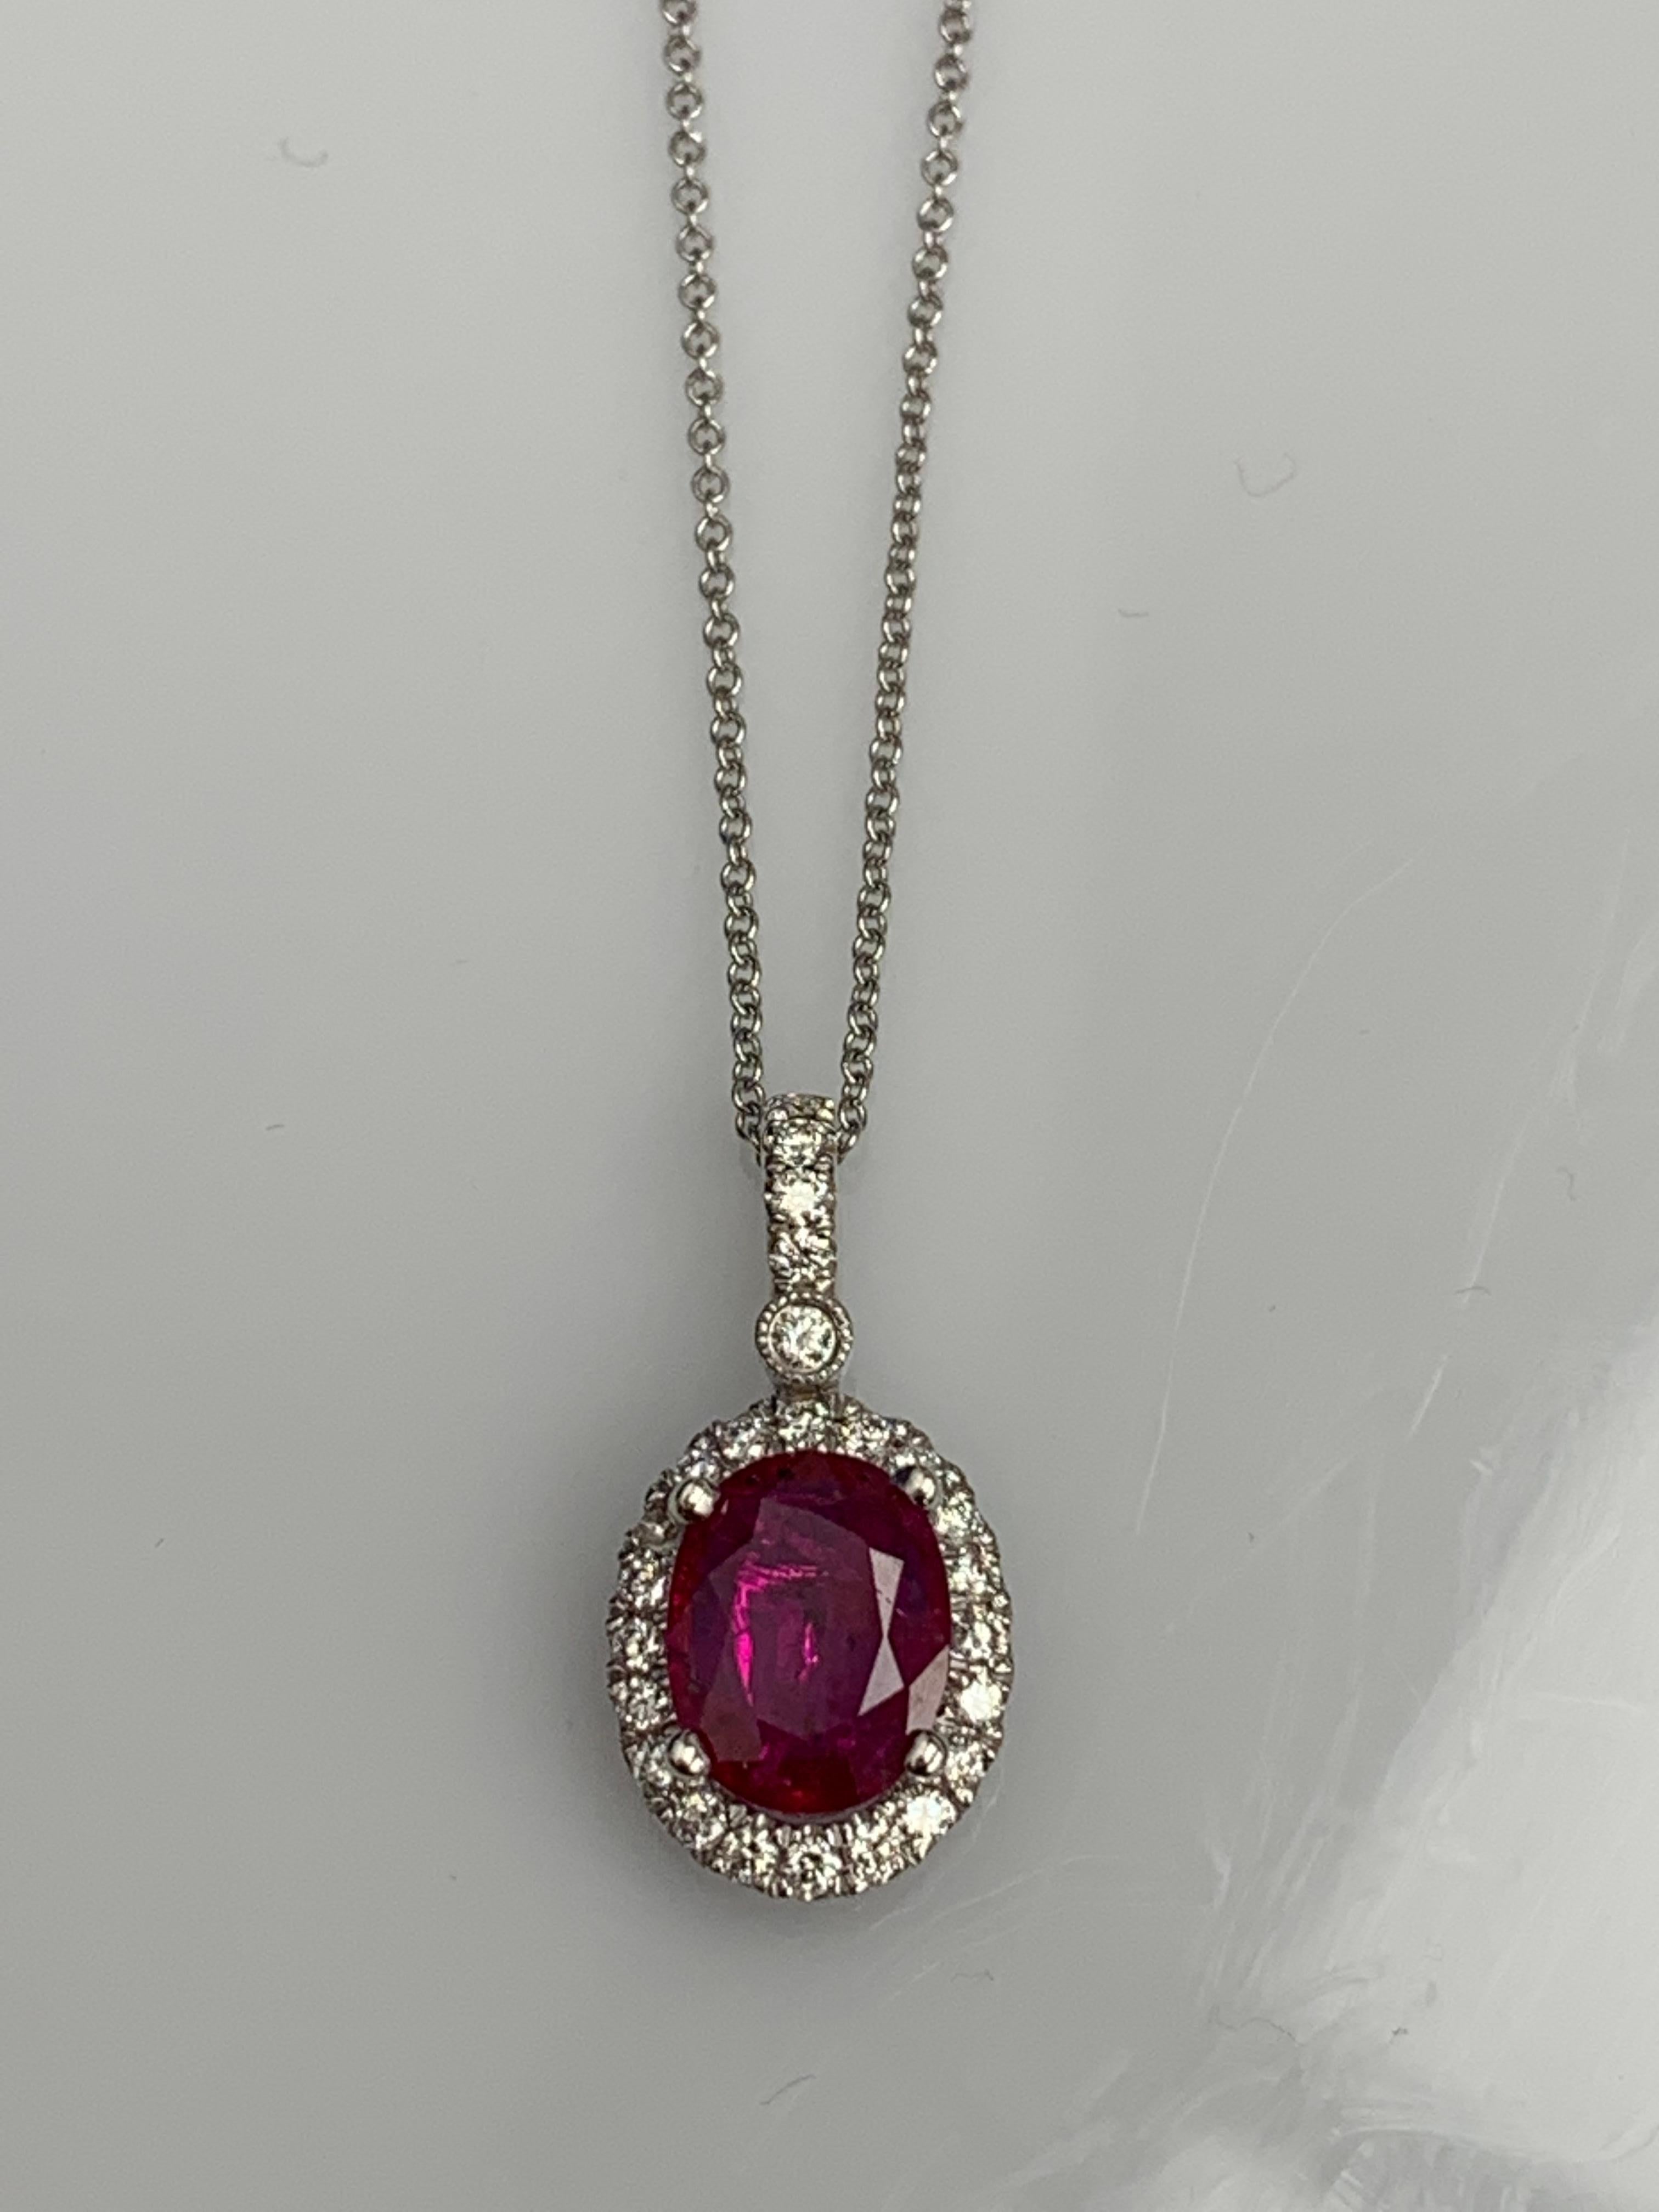 Un collier à pendentif simple mettant en valeur un rubis rouge ovale de 2,10 carats, entouré d'une pierre de taille. 
0,75 carats de 25 diamants ronds accentués. Fabriqué en or blanc 18 carats.

Le style est disponible dans différentes gammes de